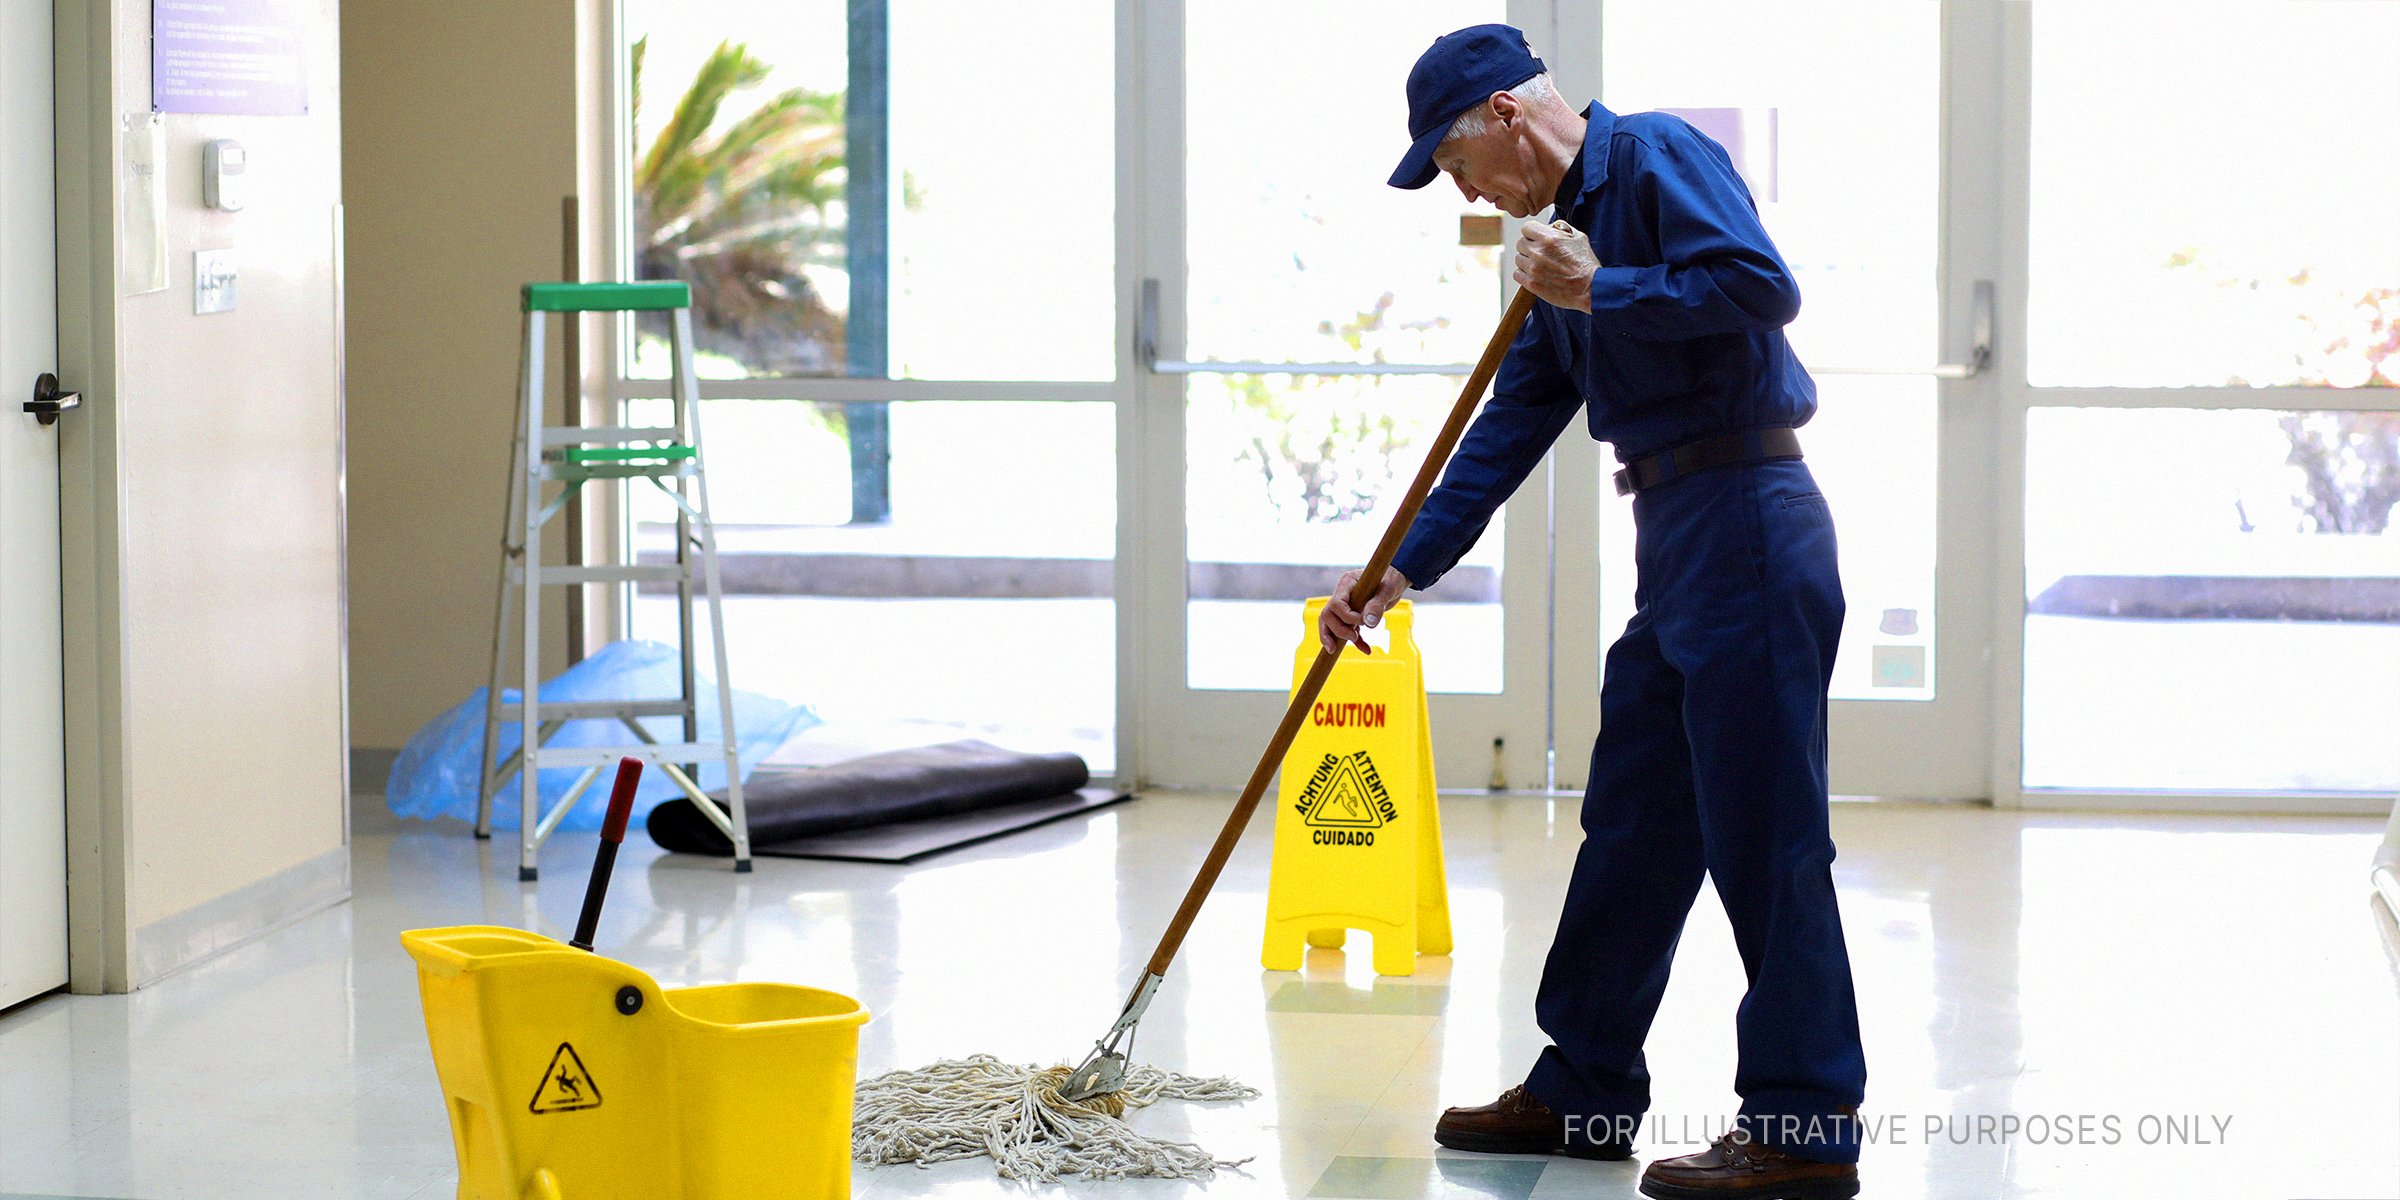 Concierge nettoyant les sols | Source : Getty Images